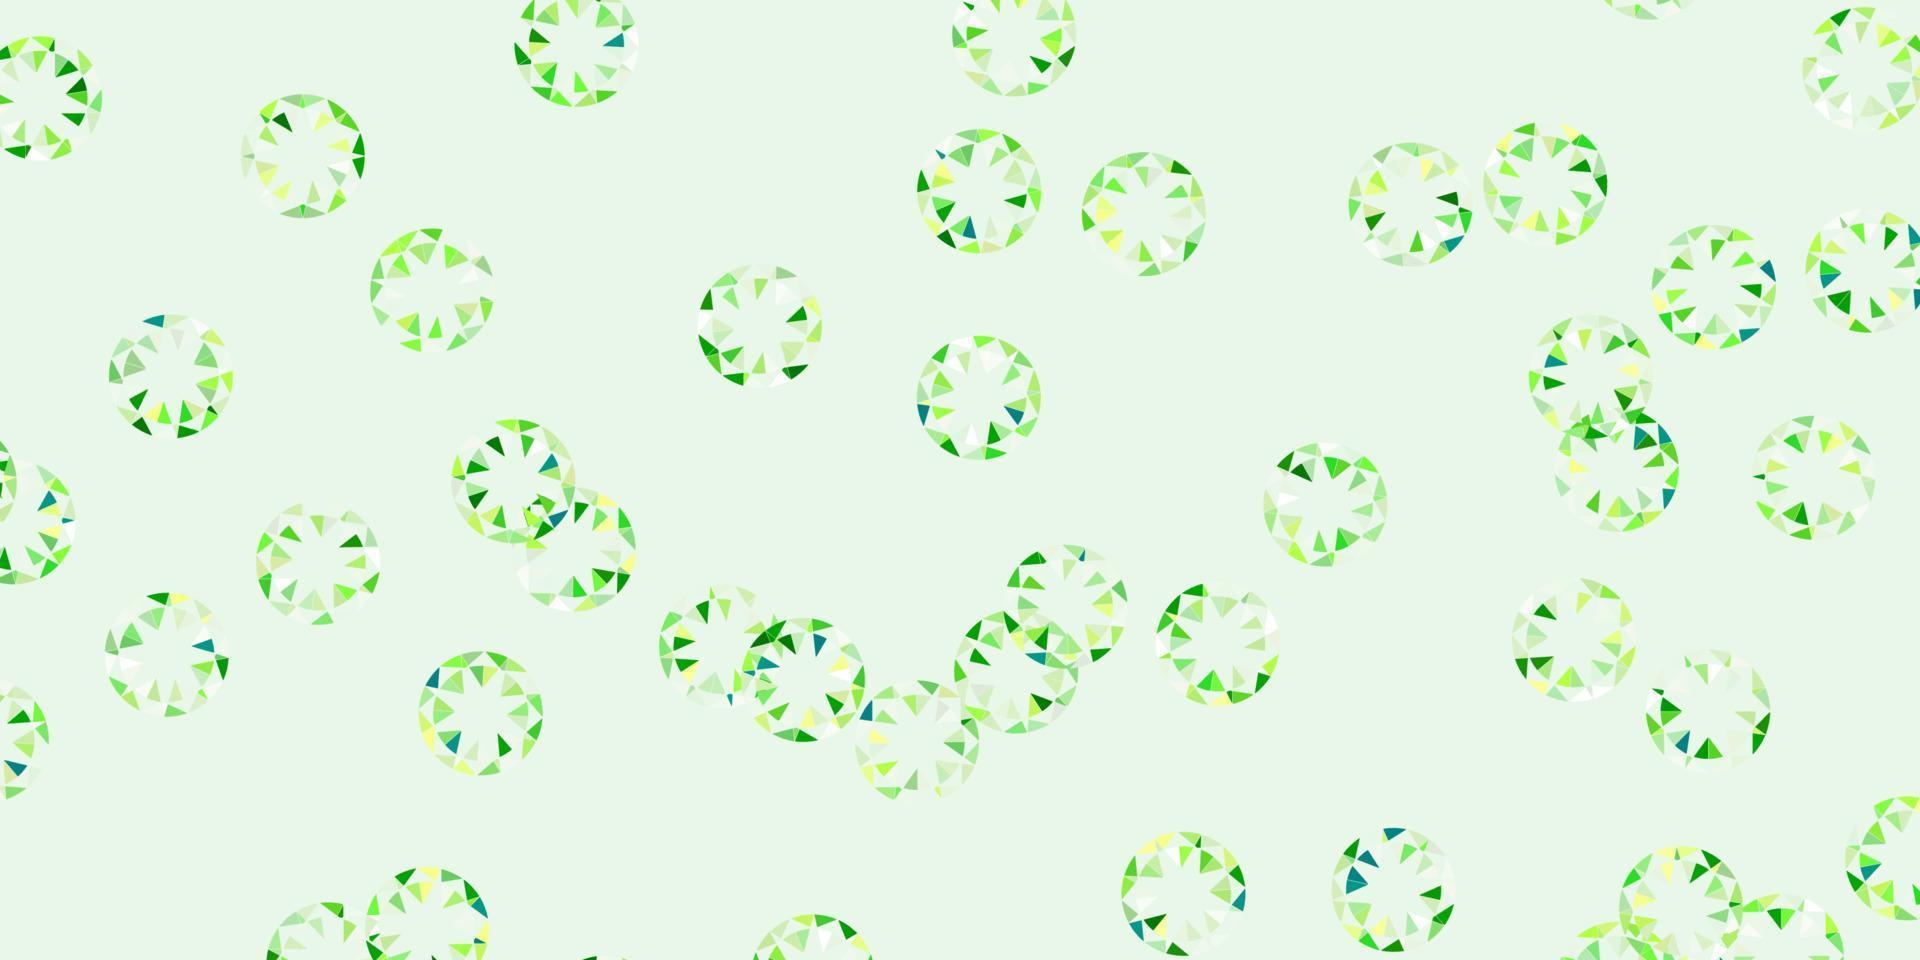 modèle vectoriel vert clair, jaune avec des cercles.